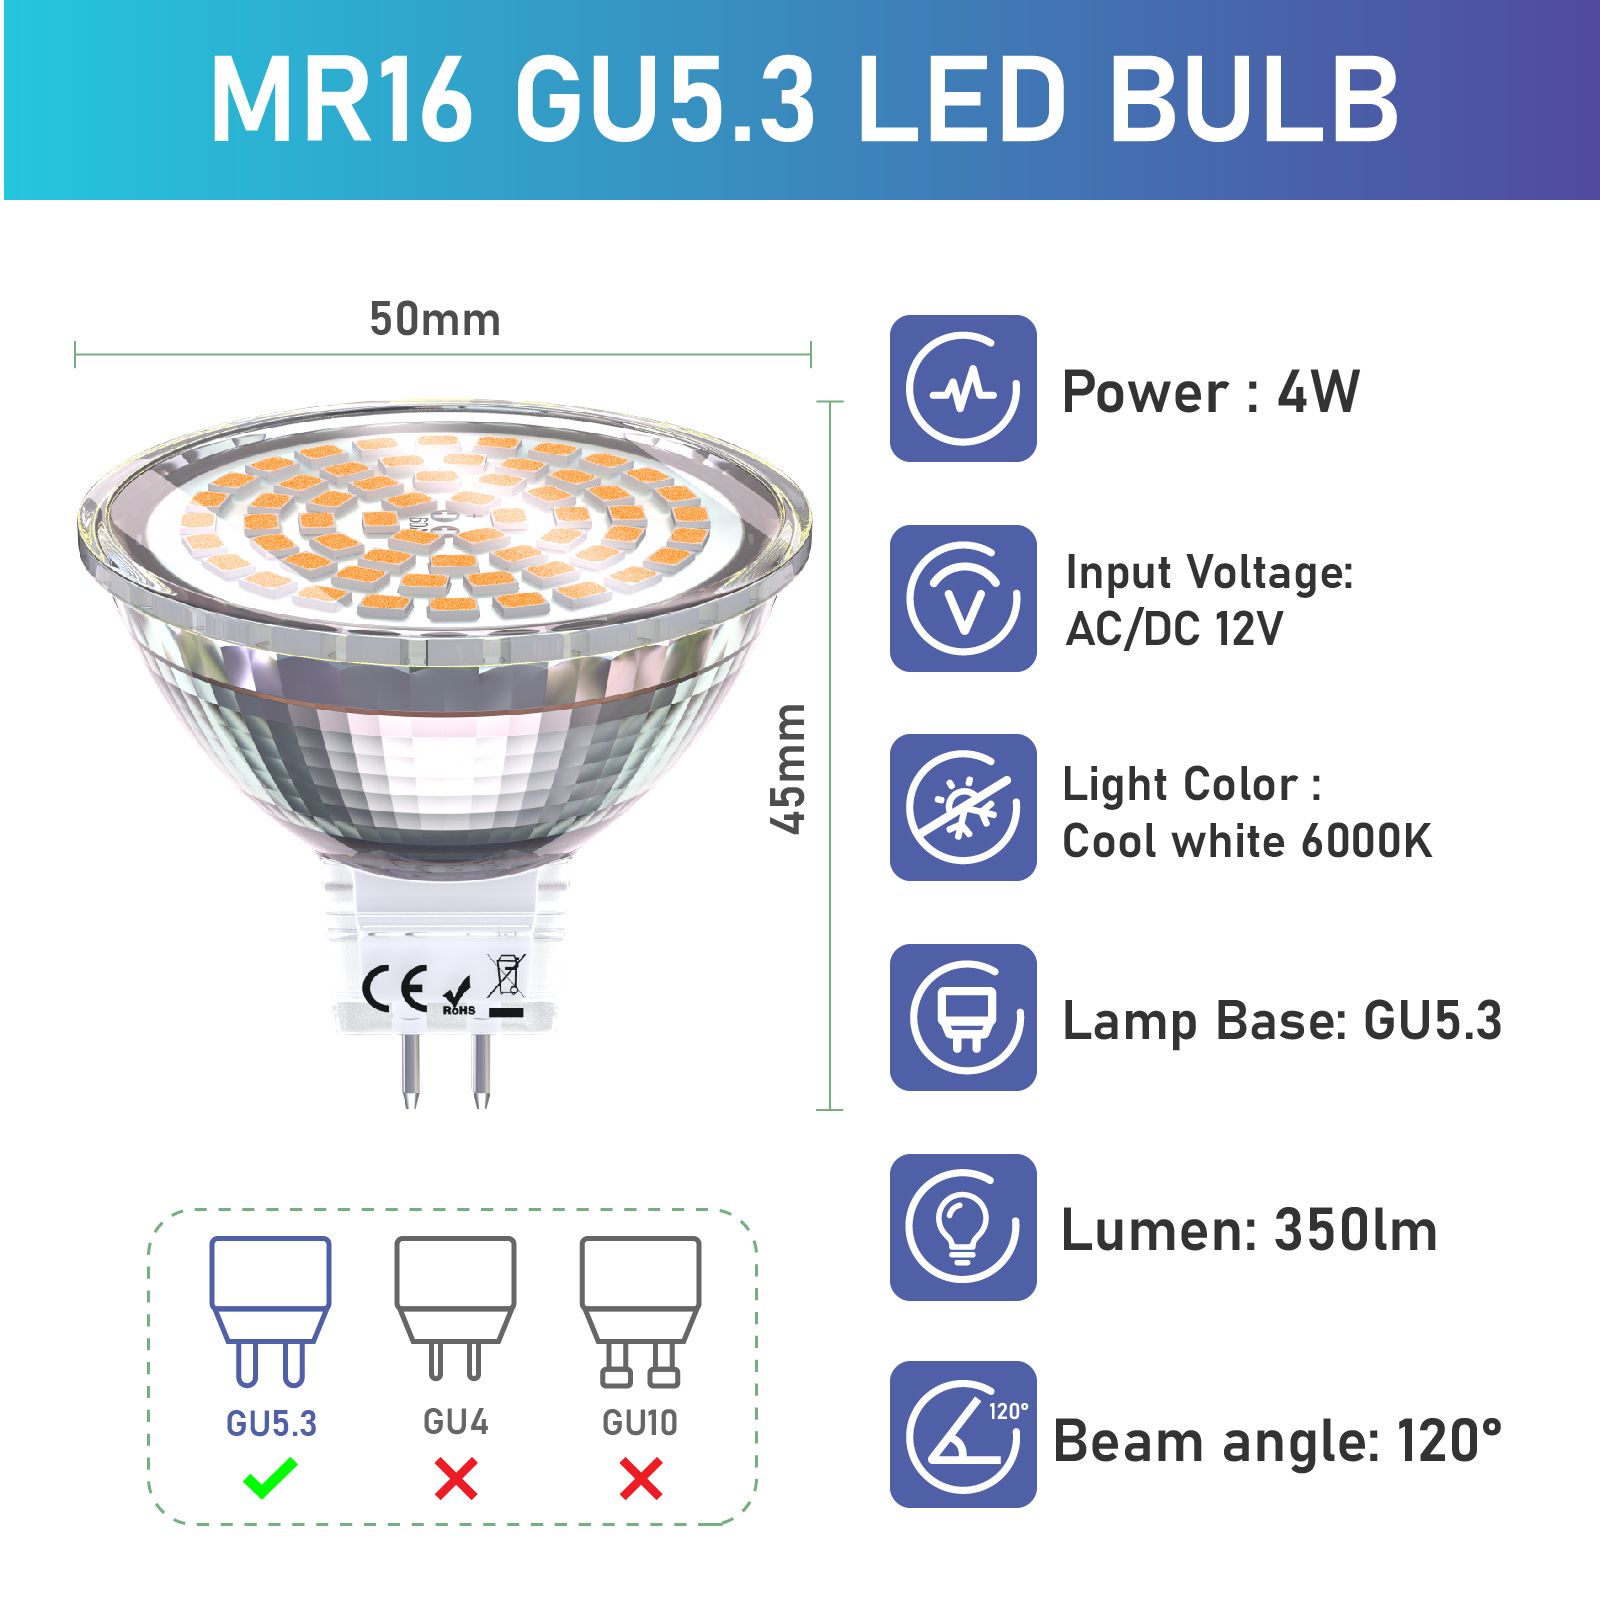 JKLcom 4W LED MR16 Bulbs 12V 4W LED Spotlight Bulb for Landscape Track  Light, MR16 GU5.3 Base,12 Volt,4W(35W Equivalent Halogen Replacement),Warm